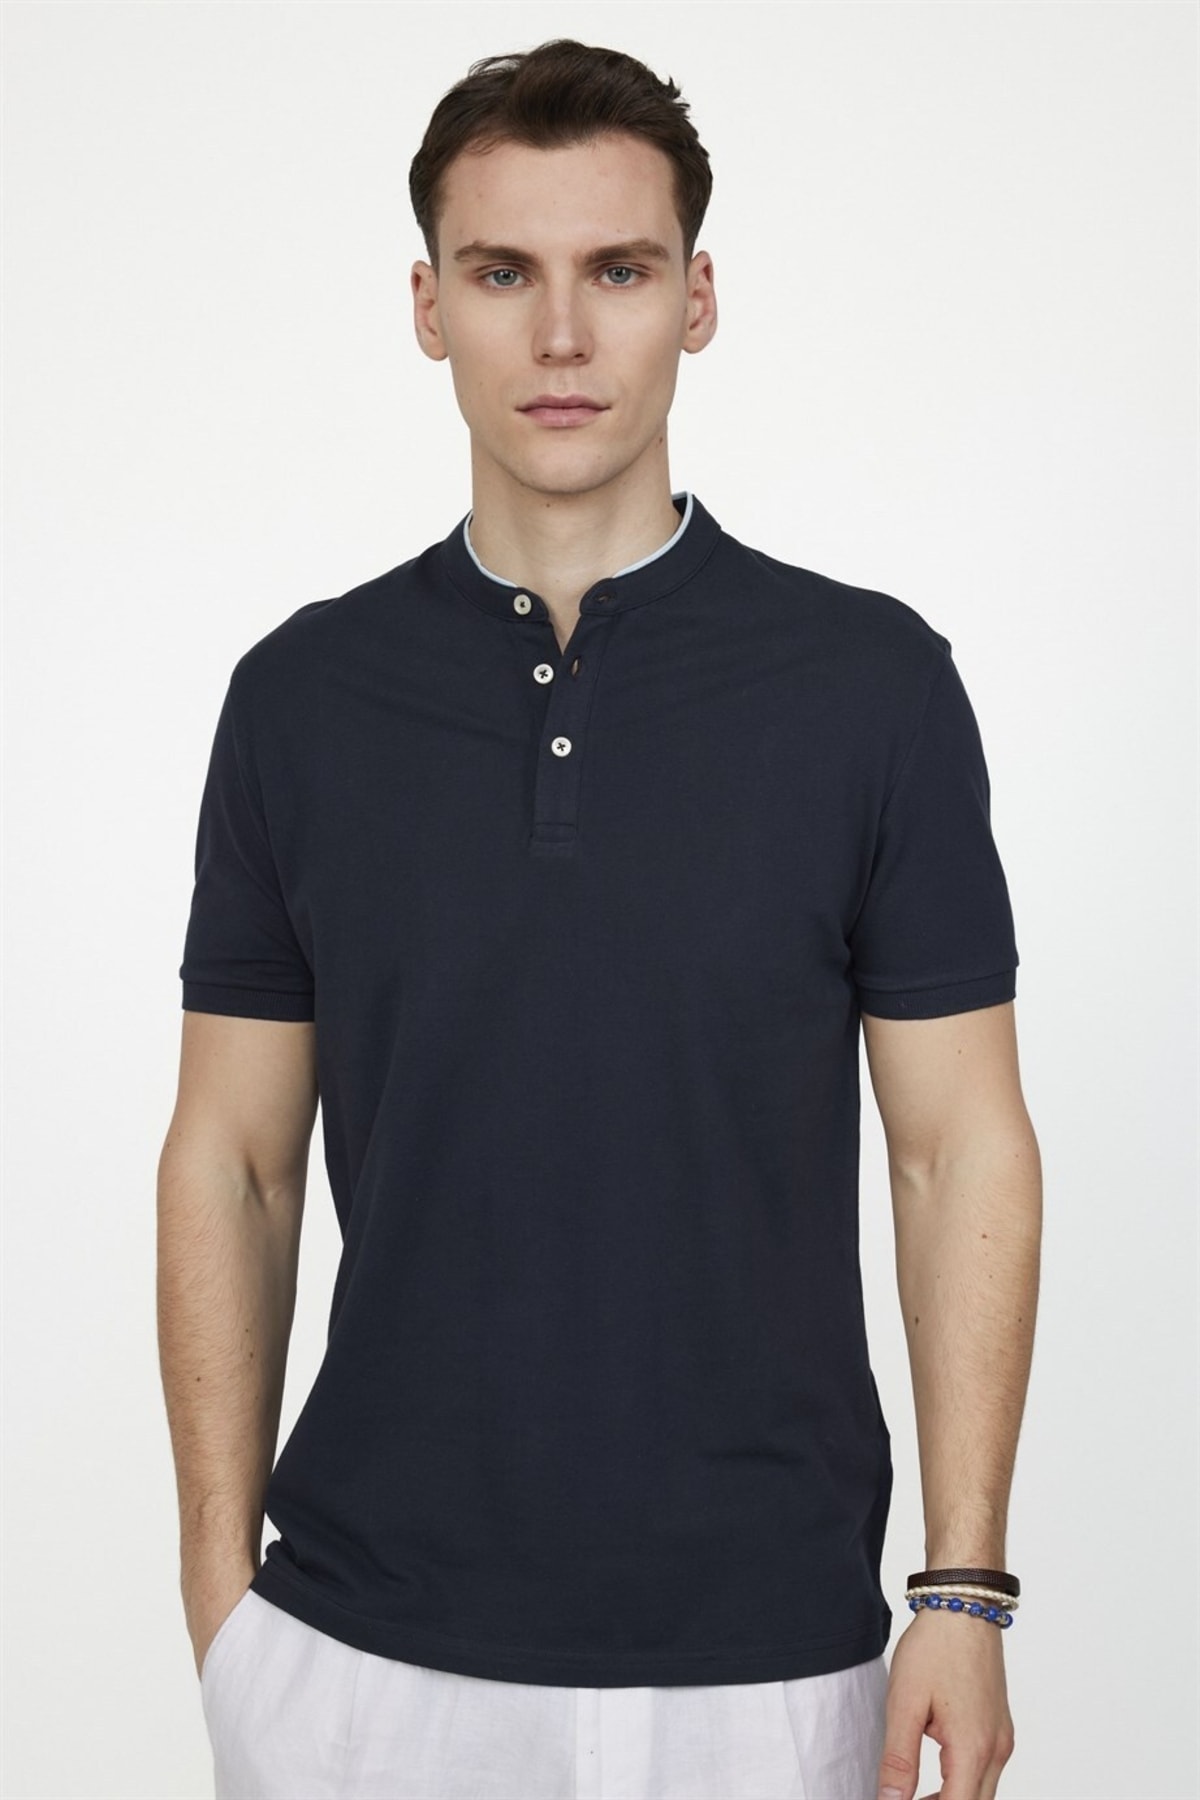 Мужская приталенная футболка из хлопка пике с воротником-судьей темно-синего цвета Tudors, темно-синий